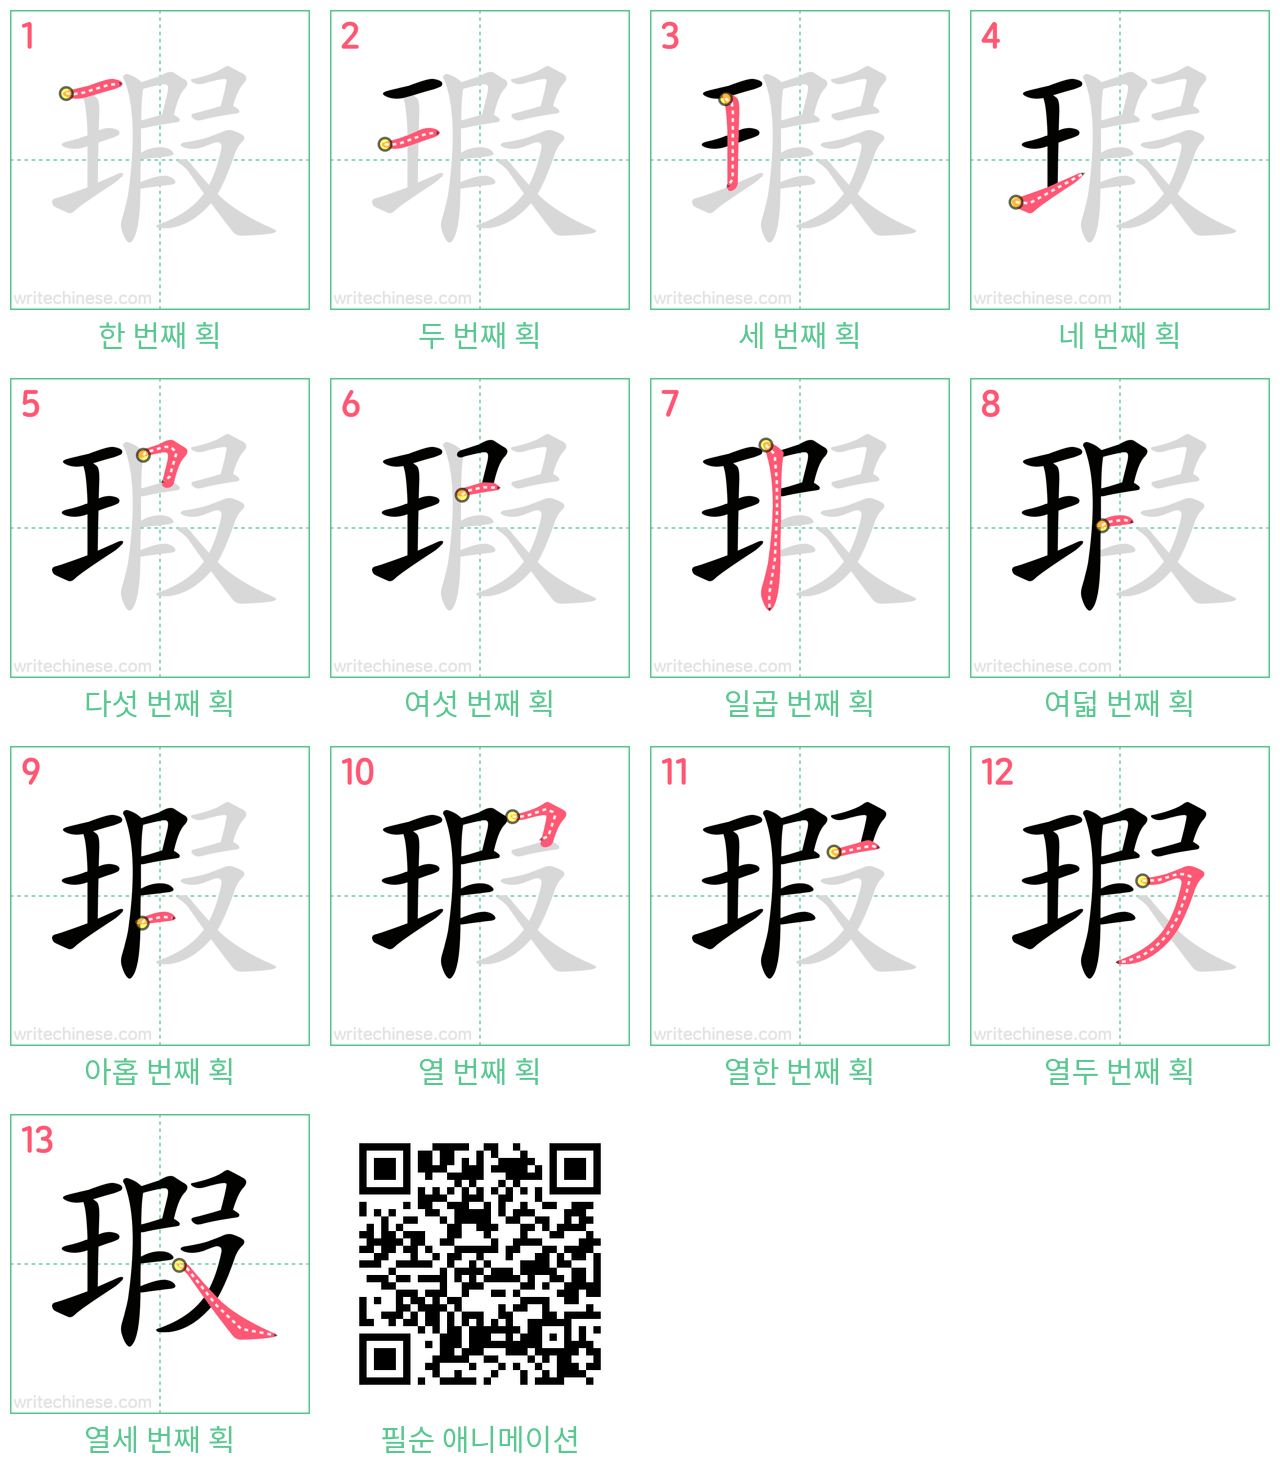 瑕 step-by-step stroke order diagrams